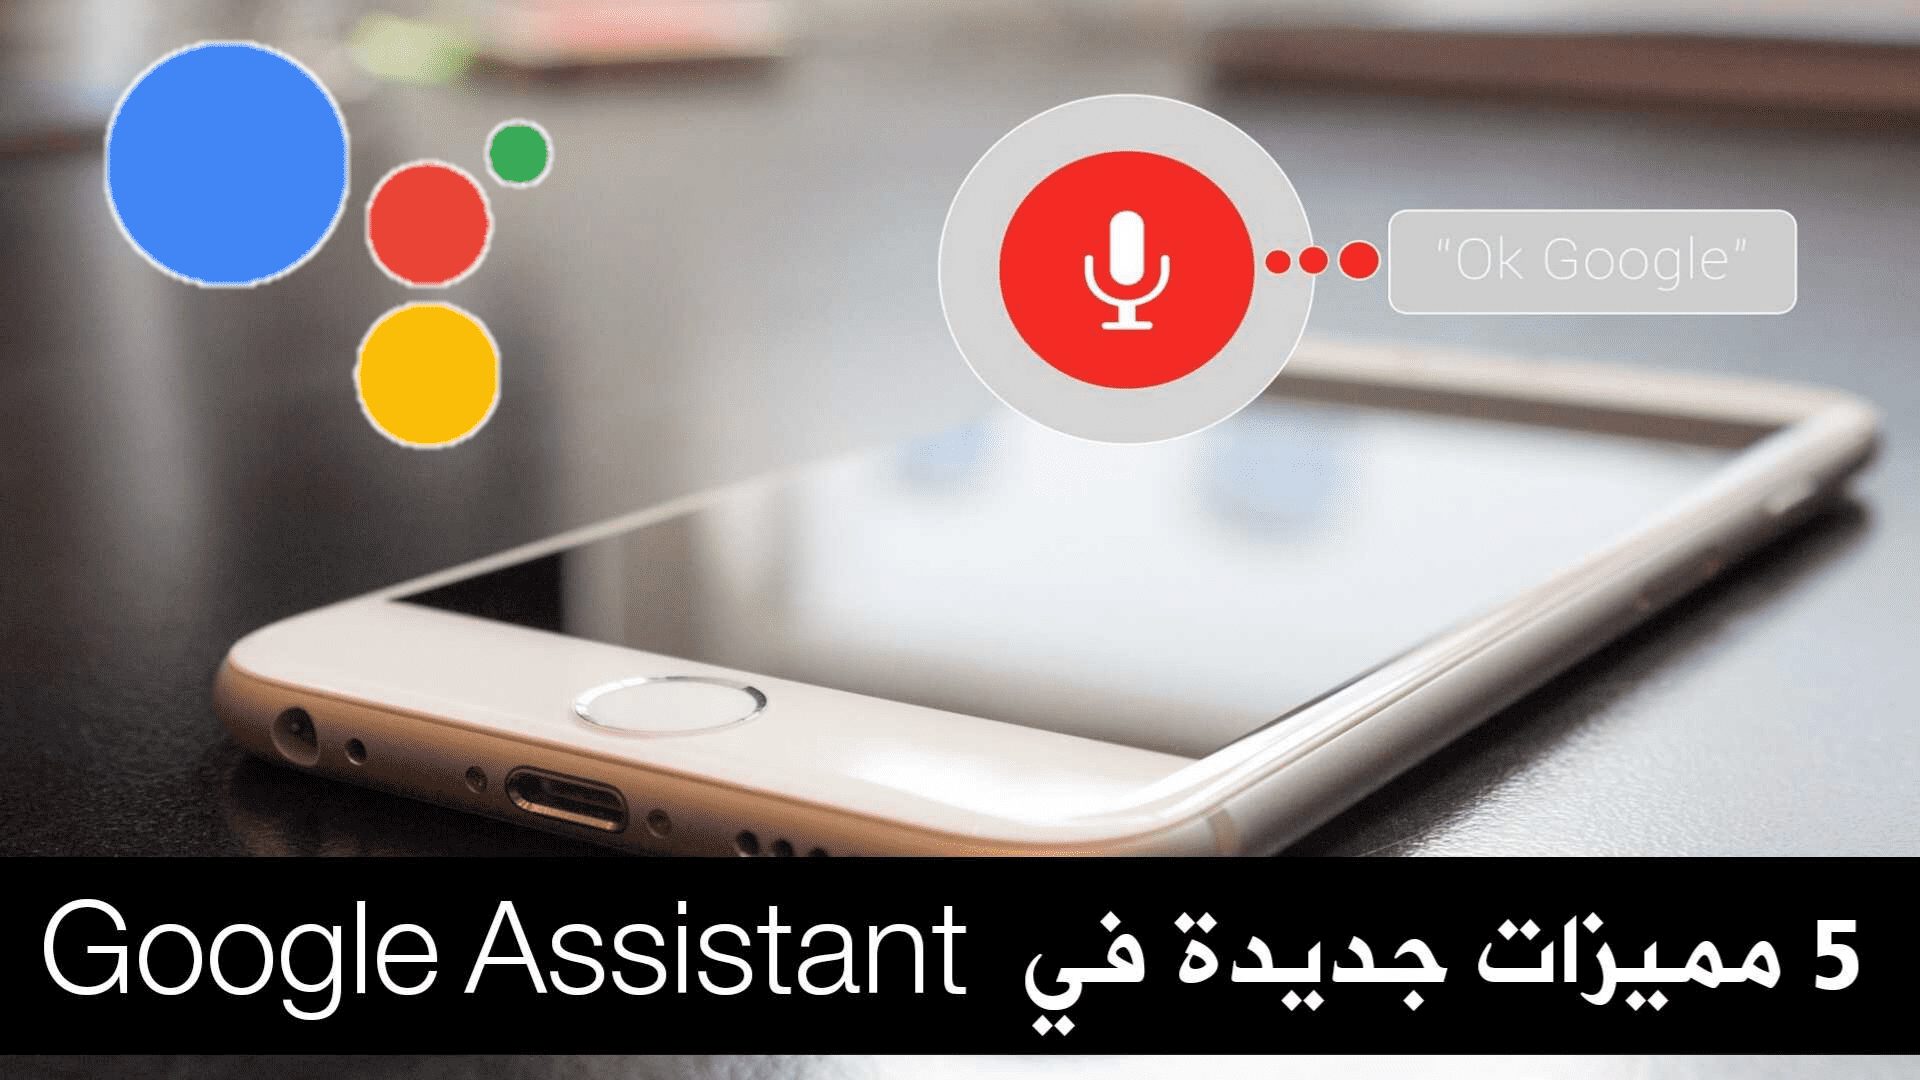 5 مميزات جديدة Google Assistant تجعل يومك أكثر سهولة